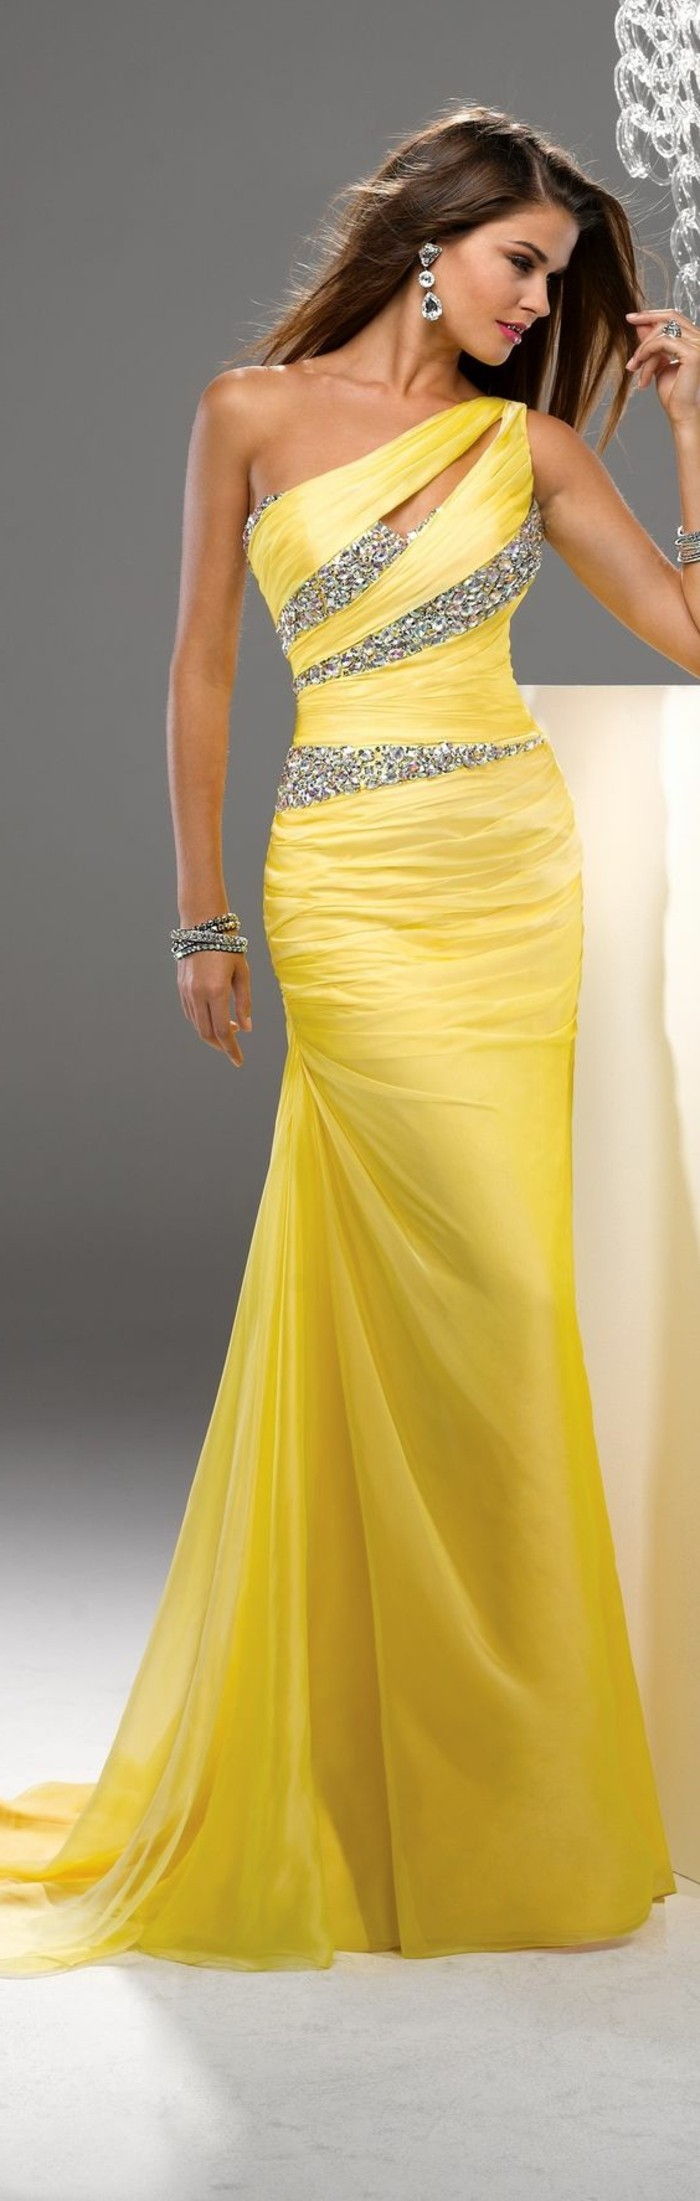 Eleganti abiti-giallo-argento